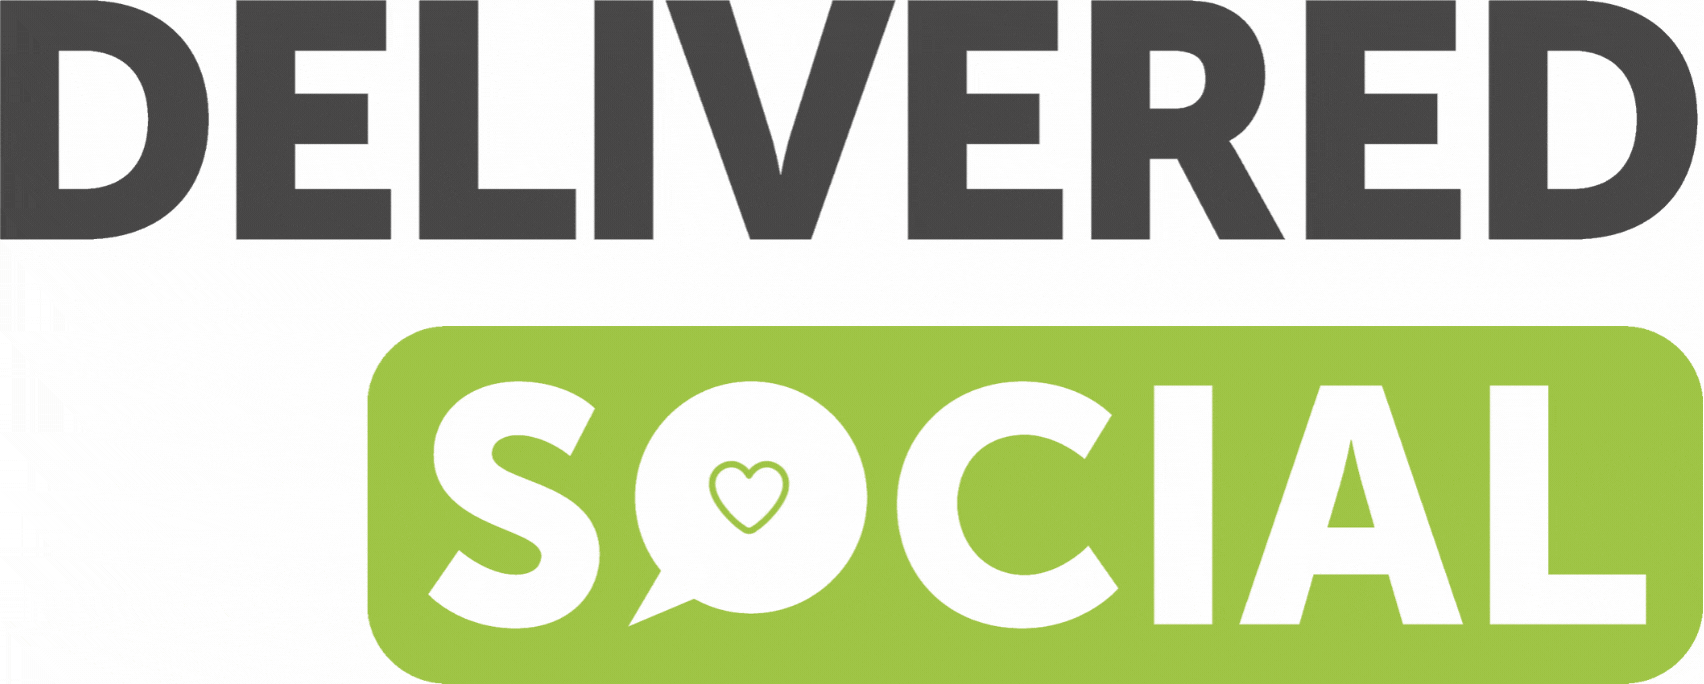 Delivered Social Green Logo